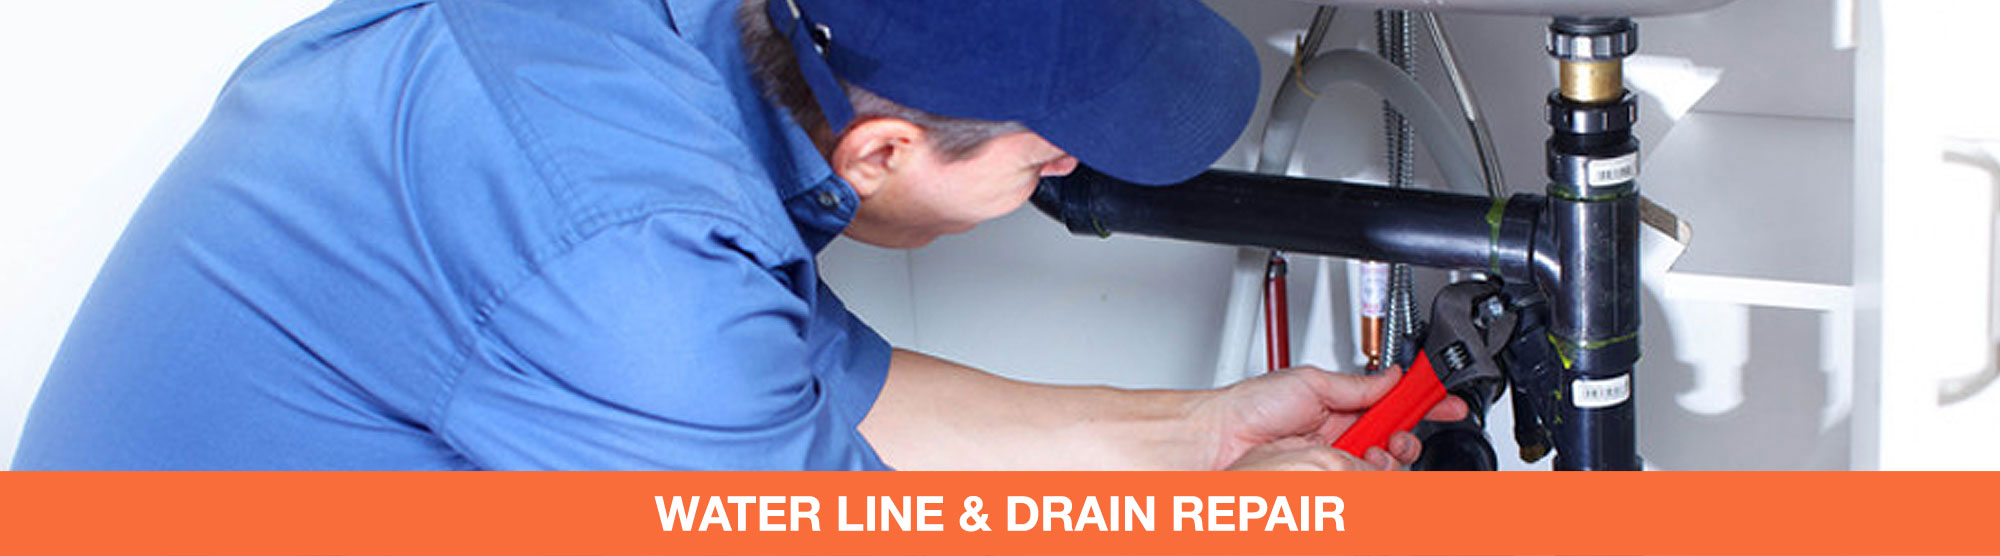 Water Line & Drain Repair